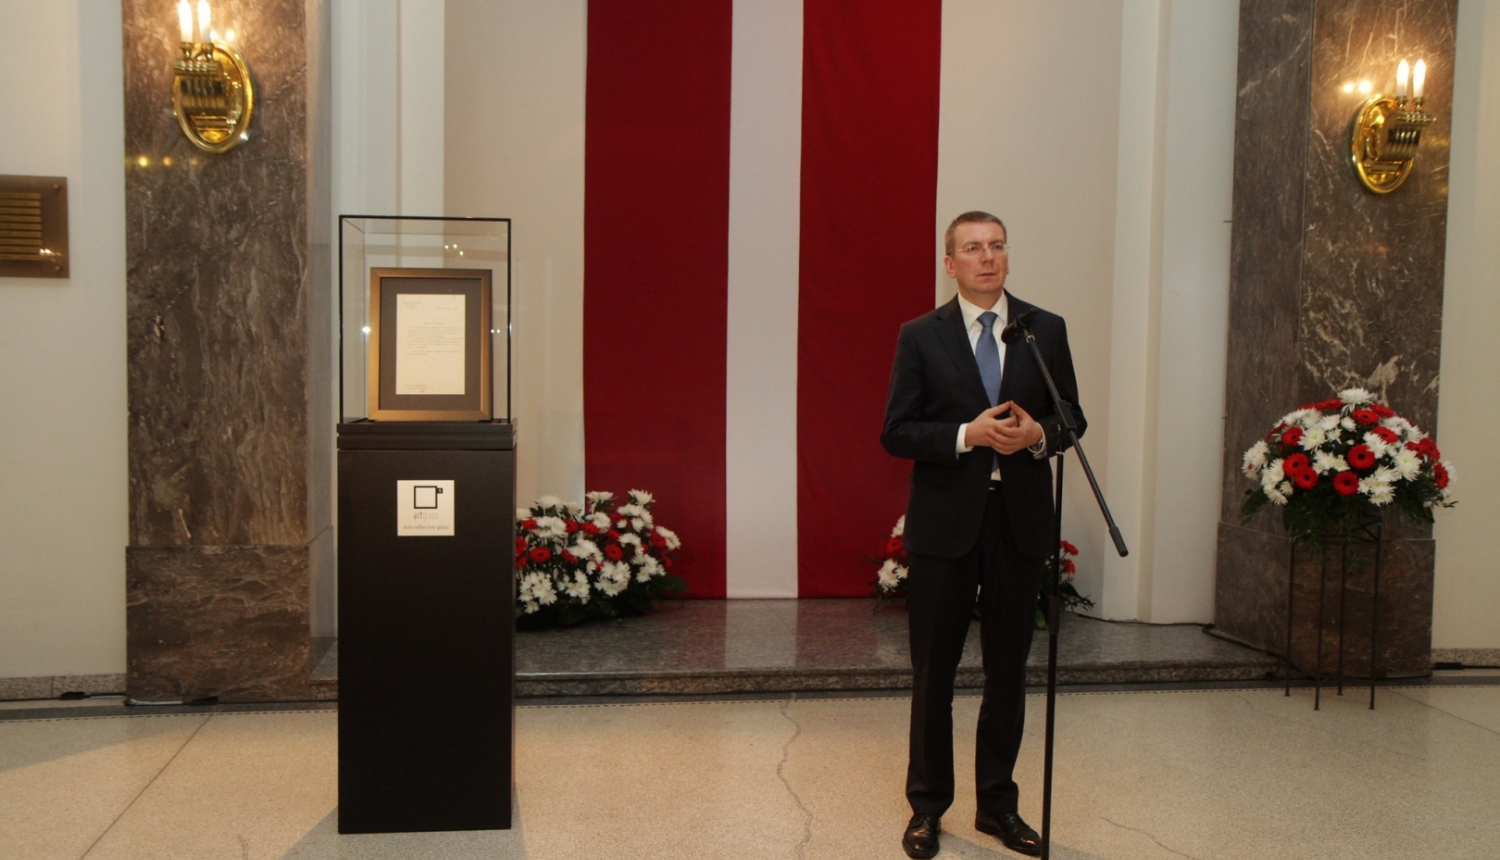 Ārlietu ministrijā atzīmē Latvijas Republikas starptautiskās atzīšanas de iure 95. gadadienu